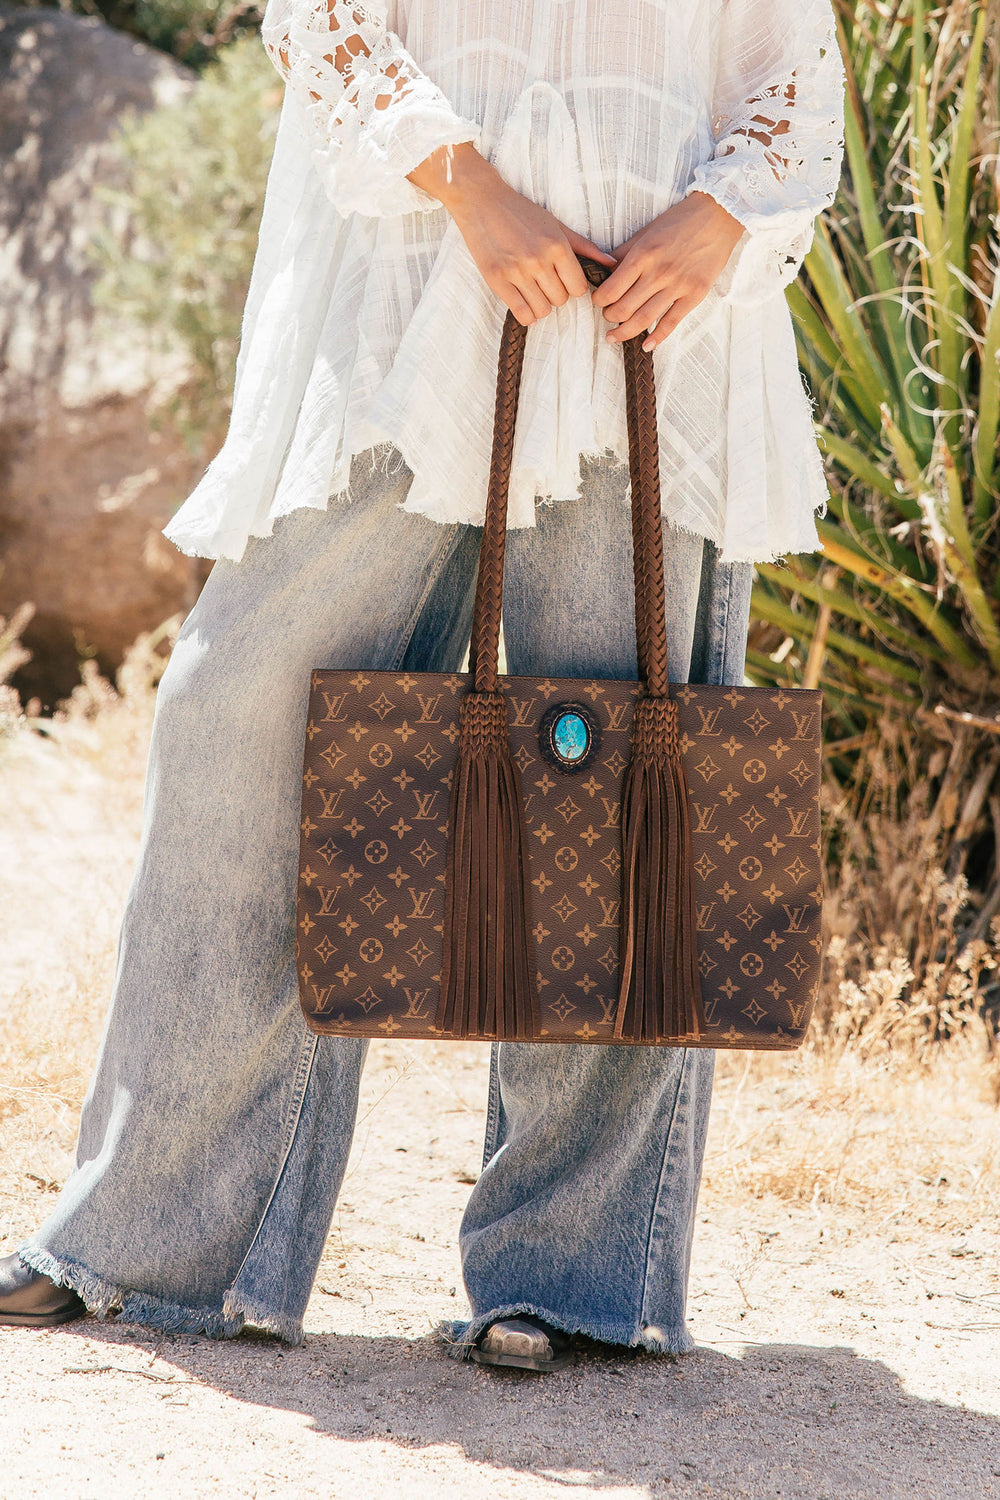 Louis Vuitton Canvas Exterior Fringe Bags & Handbags for Women